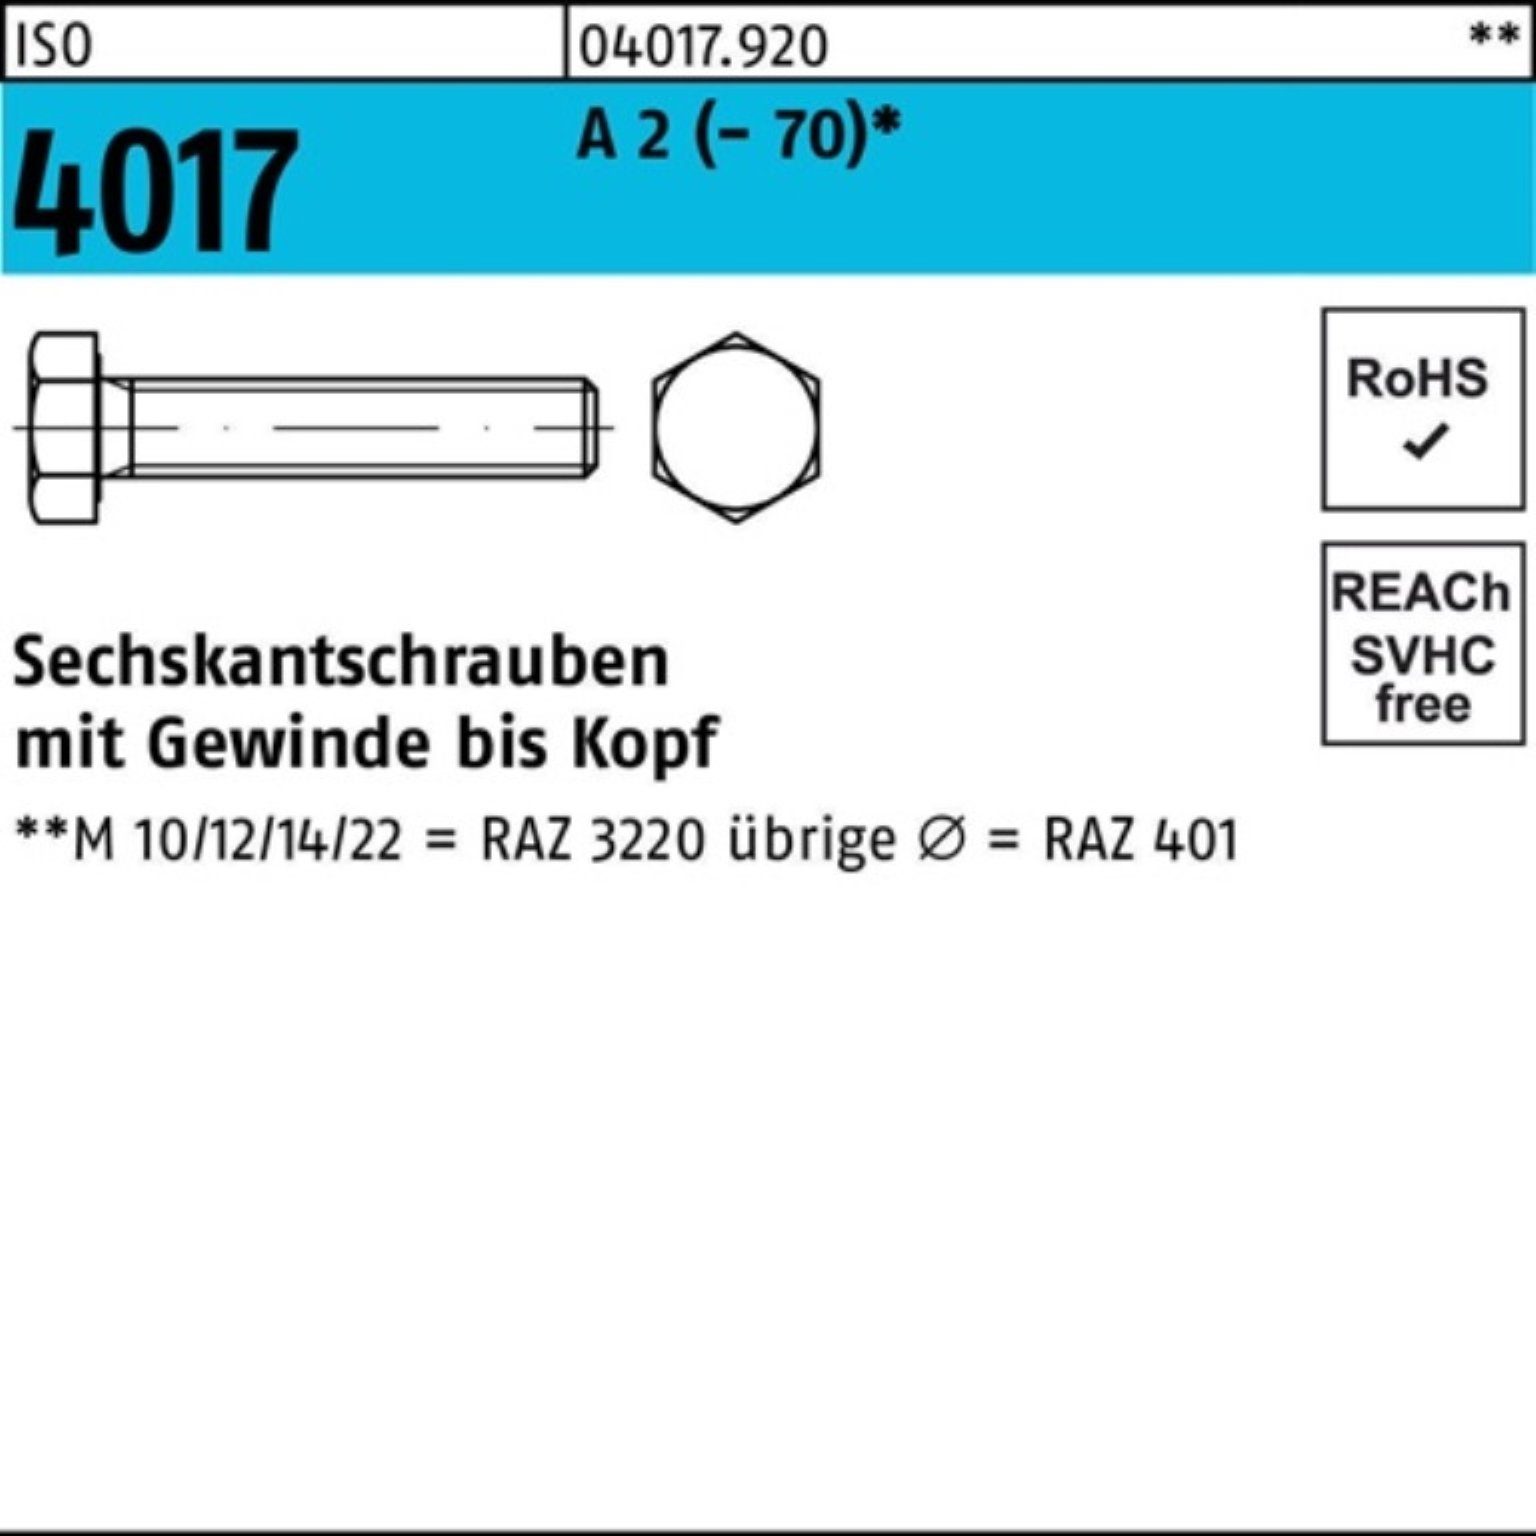 Bufab Sechskantschraube 100er Pack Sechskantschraube ISO 4017 VG M22x 110 A 2 (70) 1 Stück